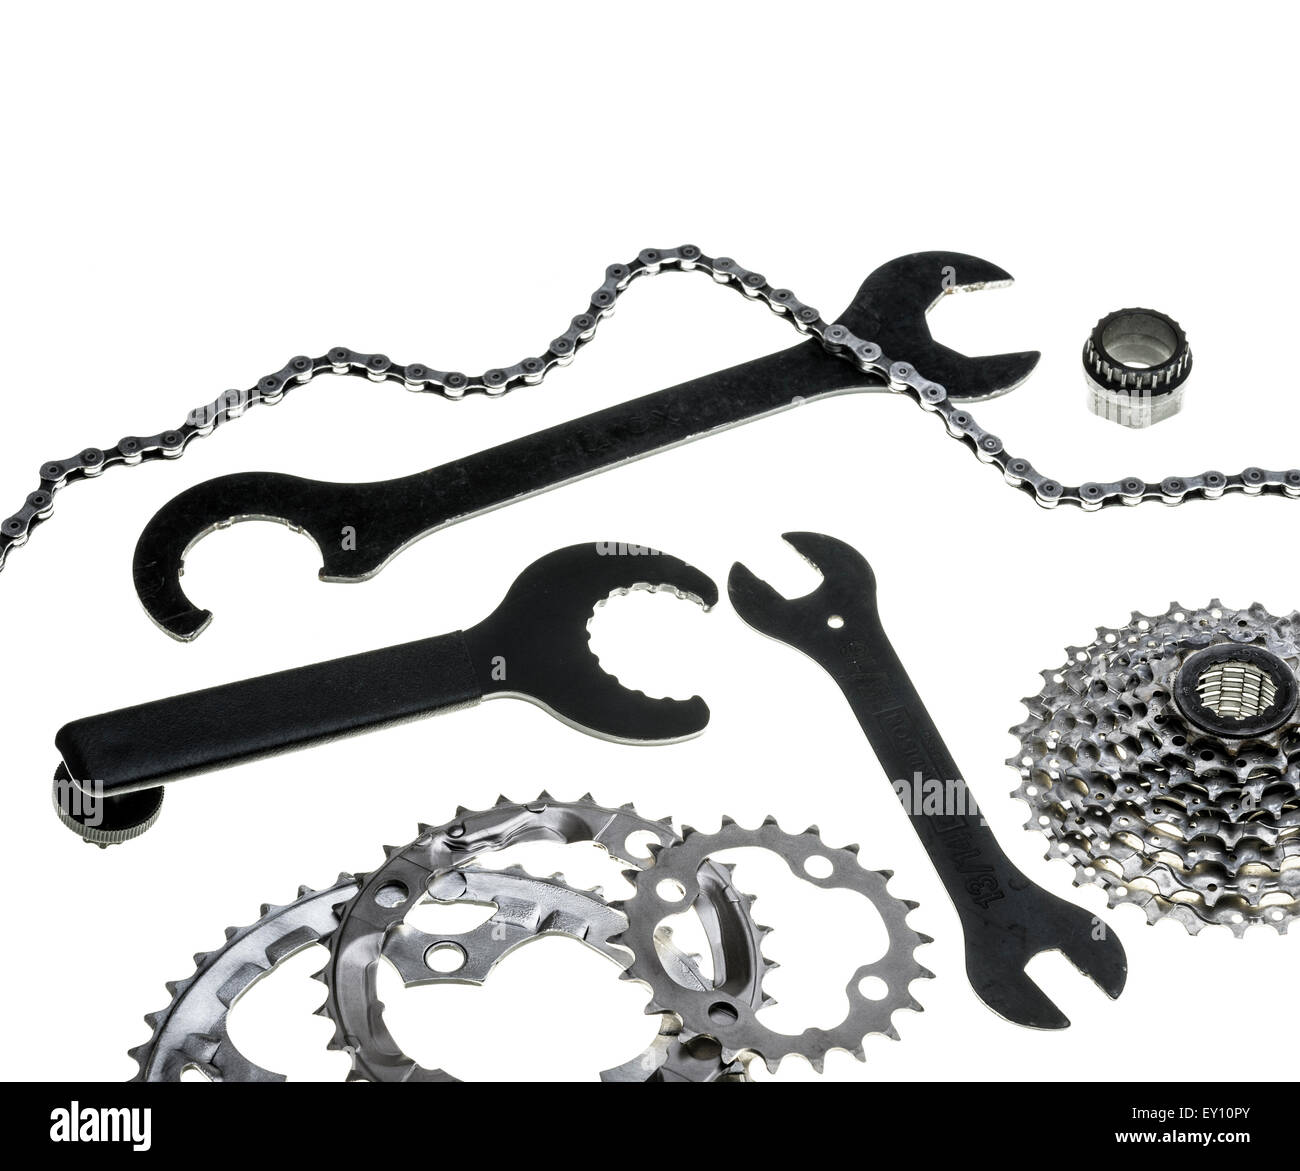 Les anneaux de la chaîne du cycle, cassette arrière et de la chaîne, avec quelques outils de réparation au Bench du cycle. Banque D'Images